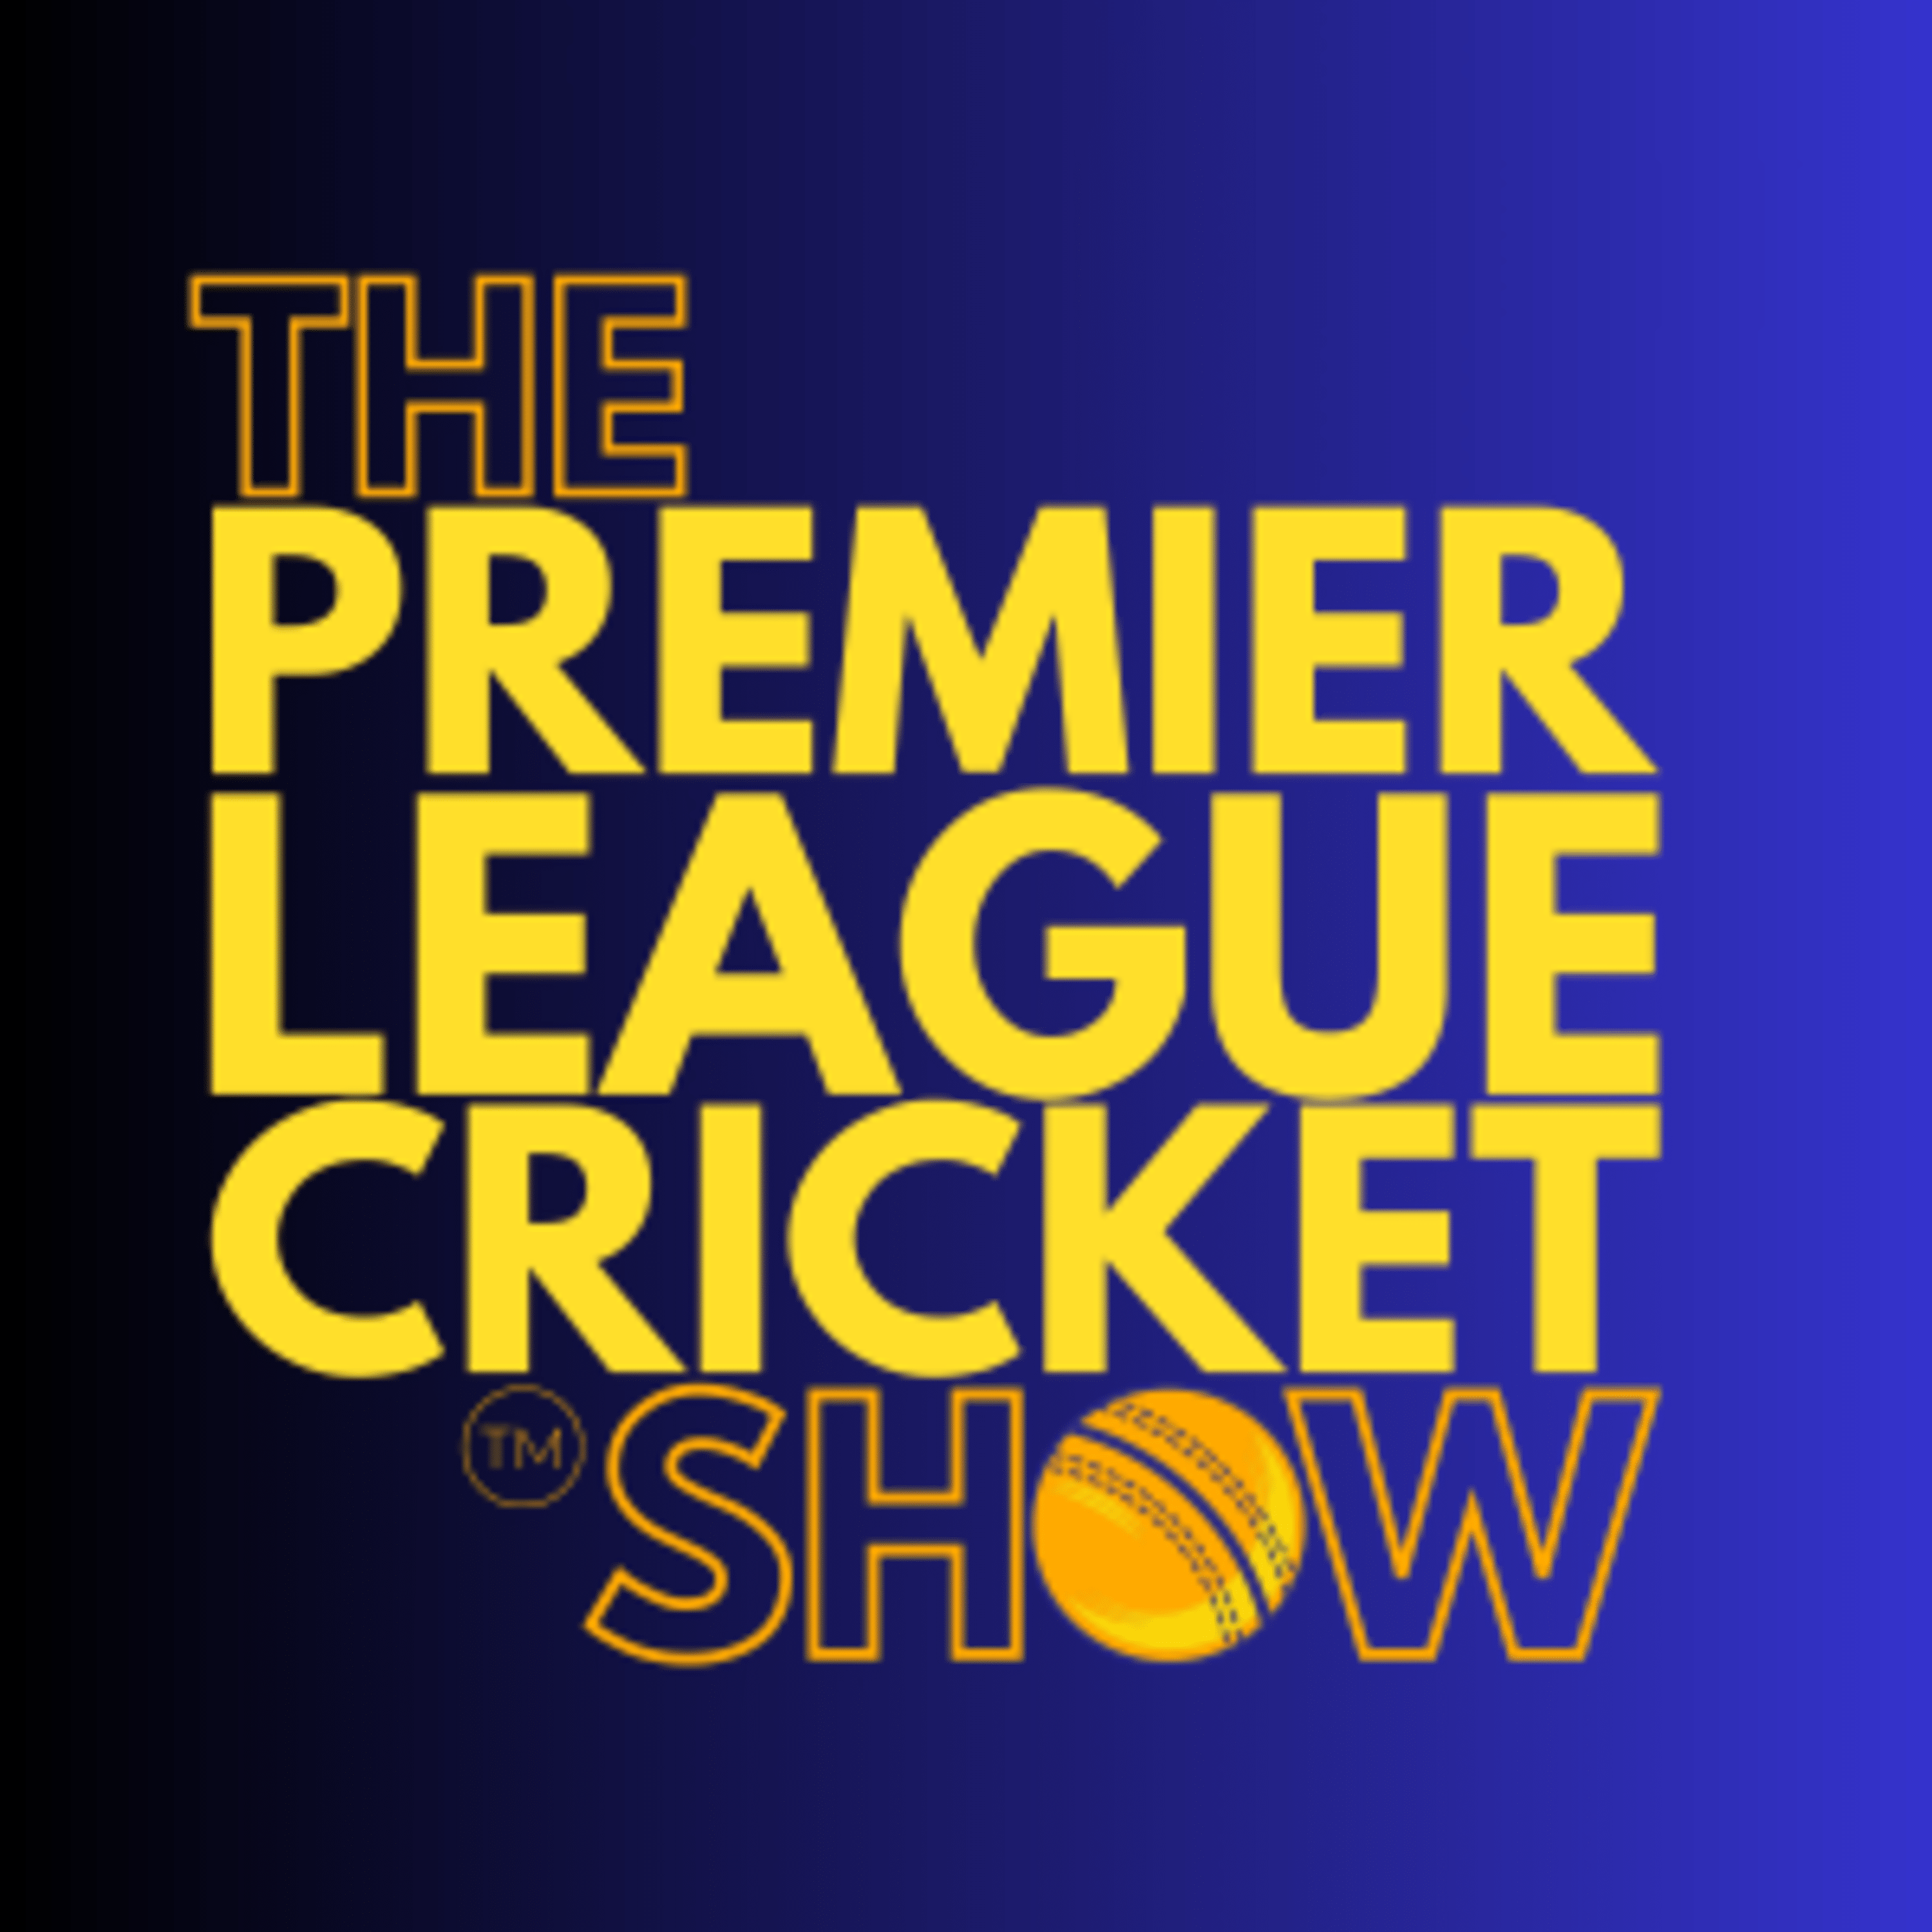 The Premier League Cricket Show